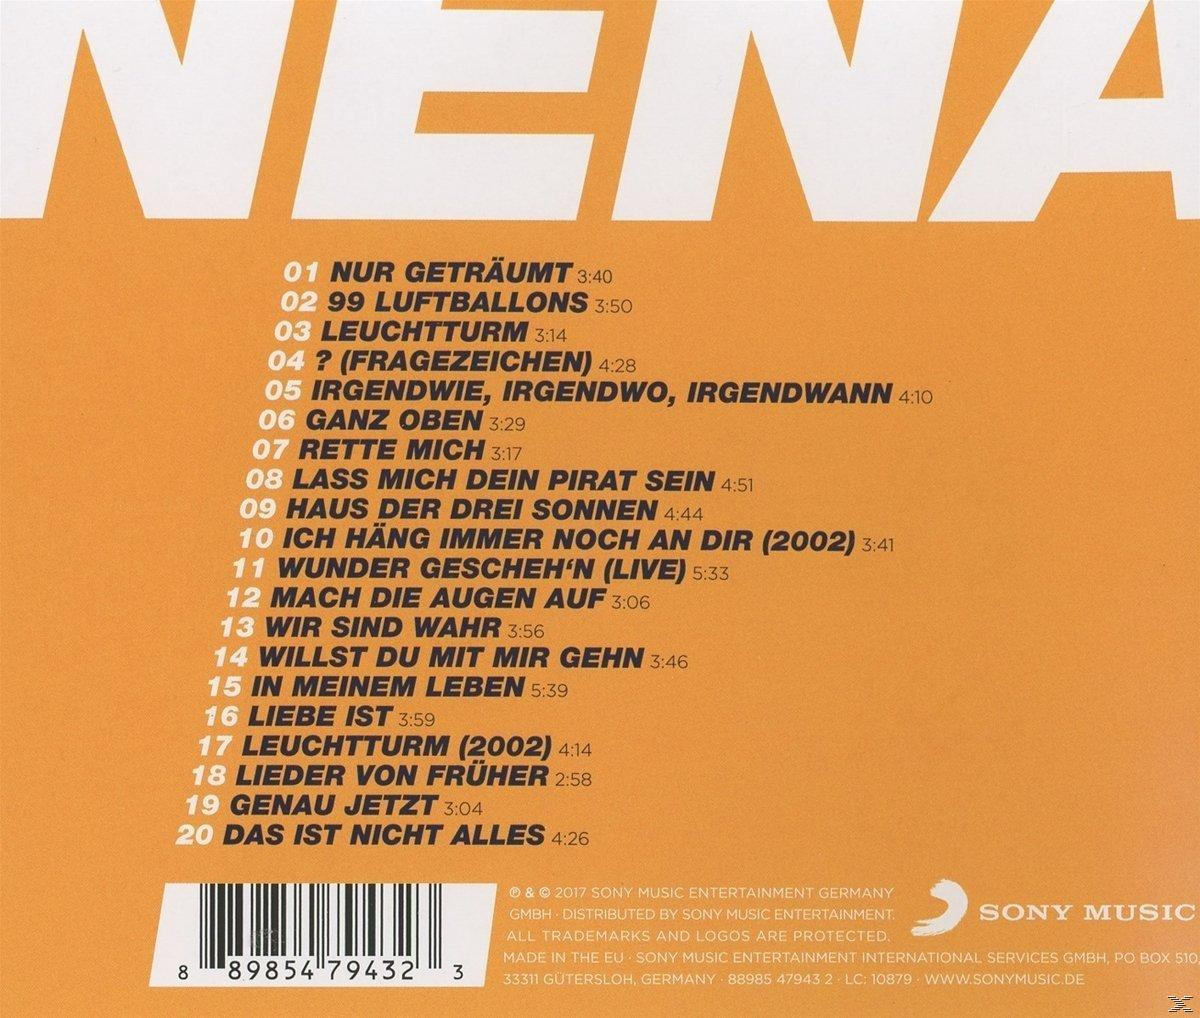 Neue Nena Best Das Album 40 - - Of - (CD)